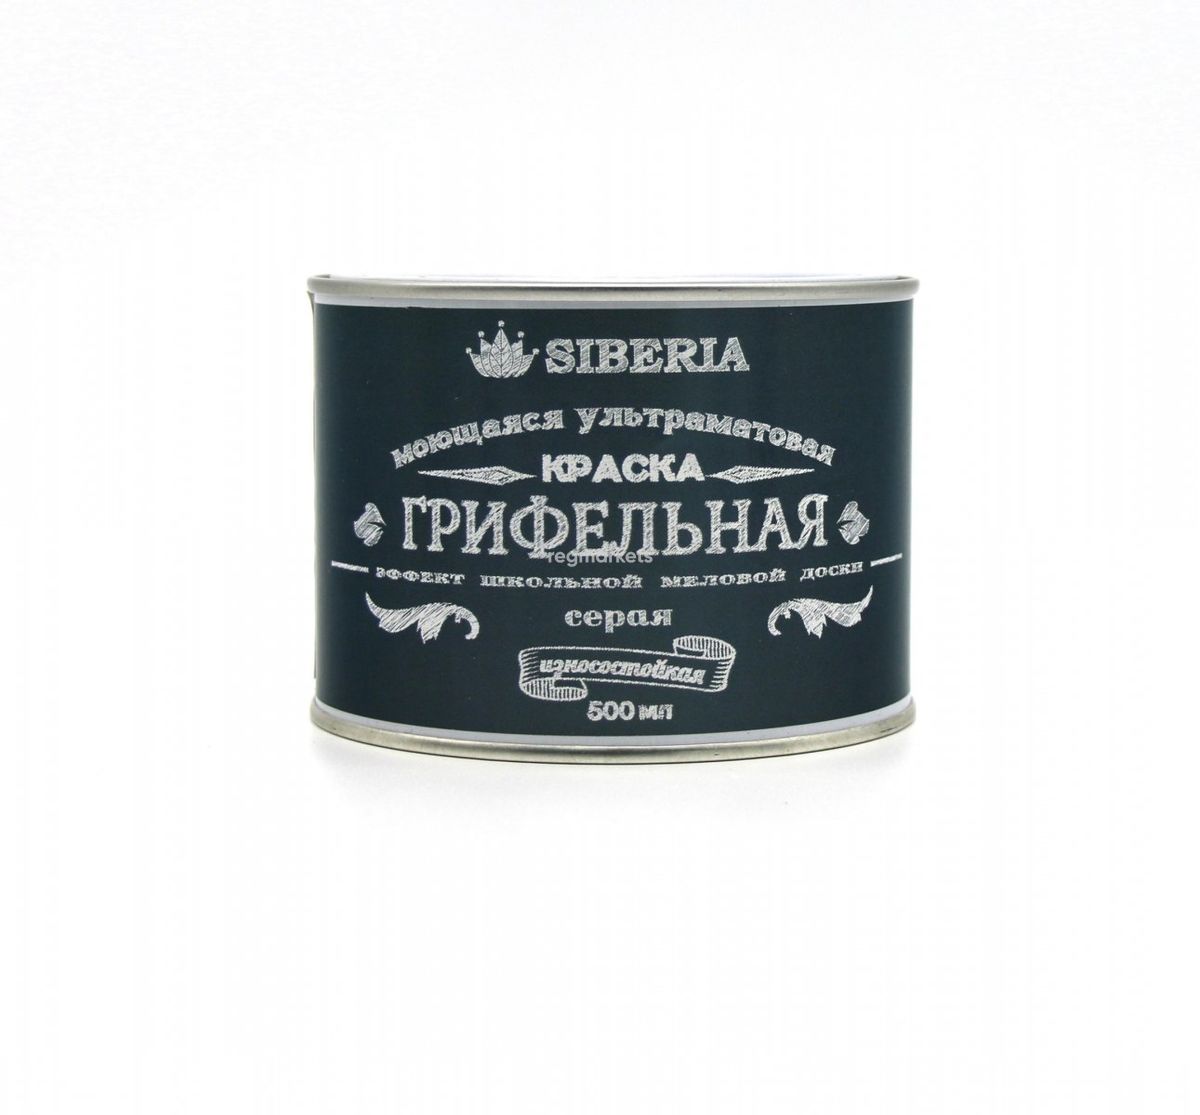 Siberia Грифельная краска (эффект школьной грифельной доски), цвет: серый, 0,5 л.